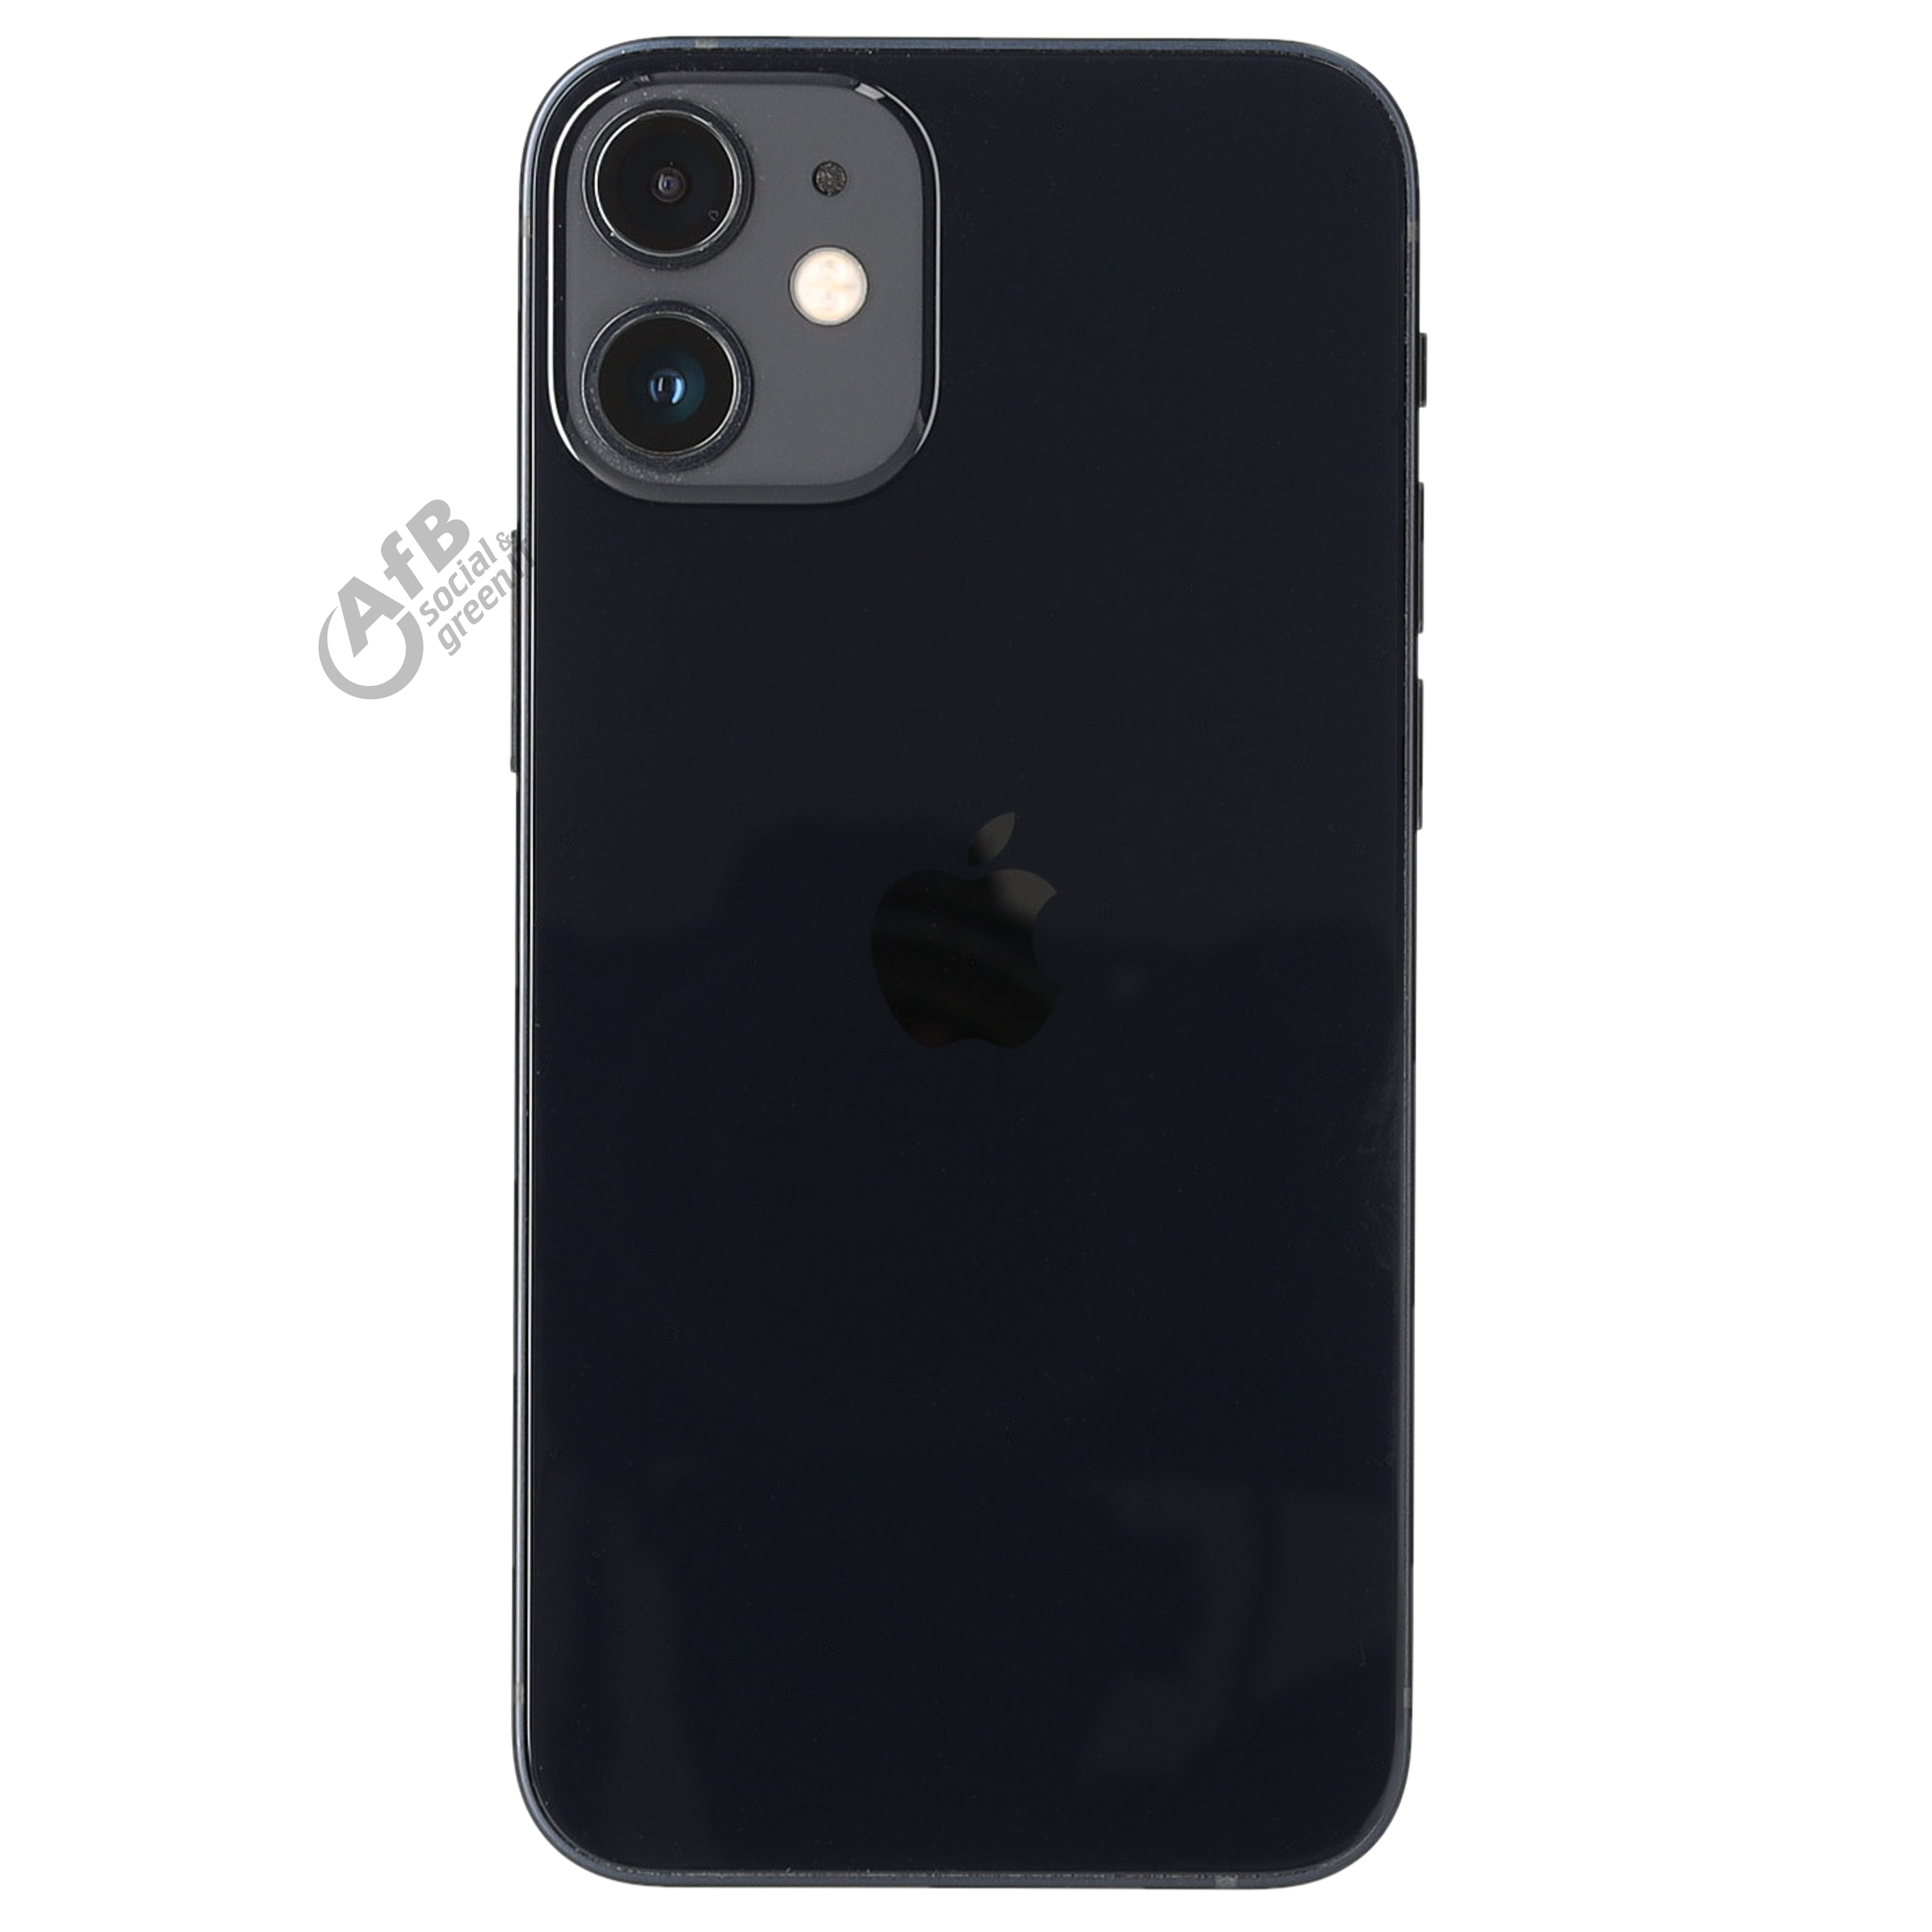 Apple iPhone 12 miniGut - AfB-refurbished